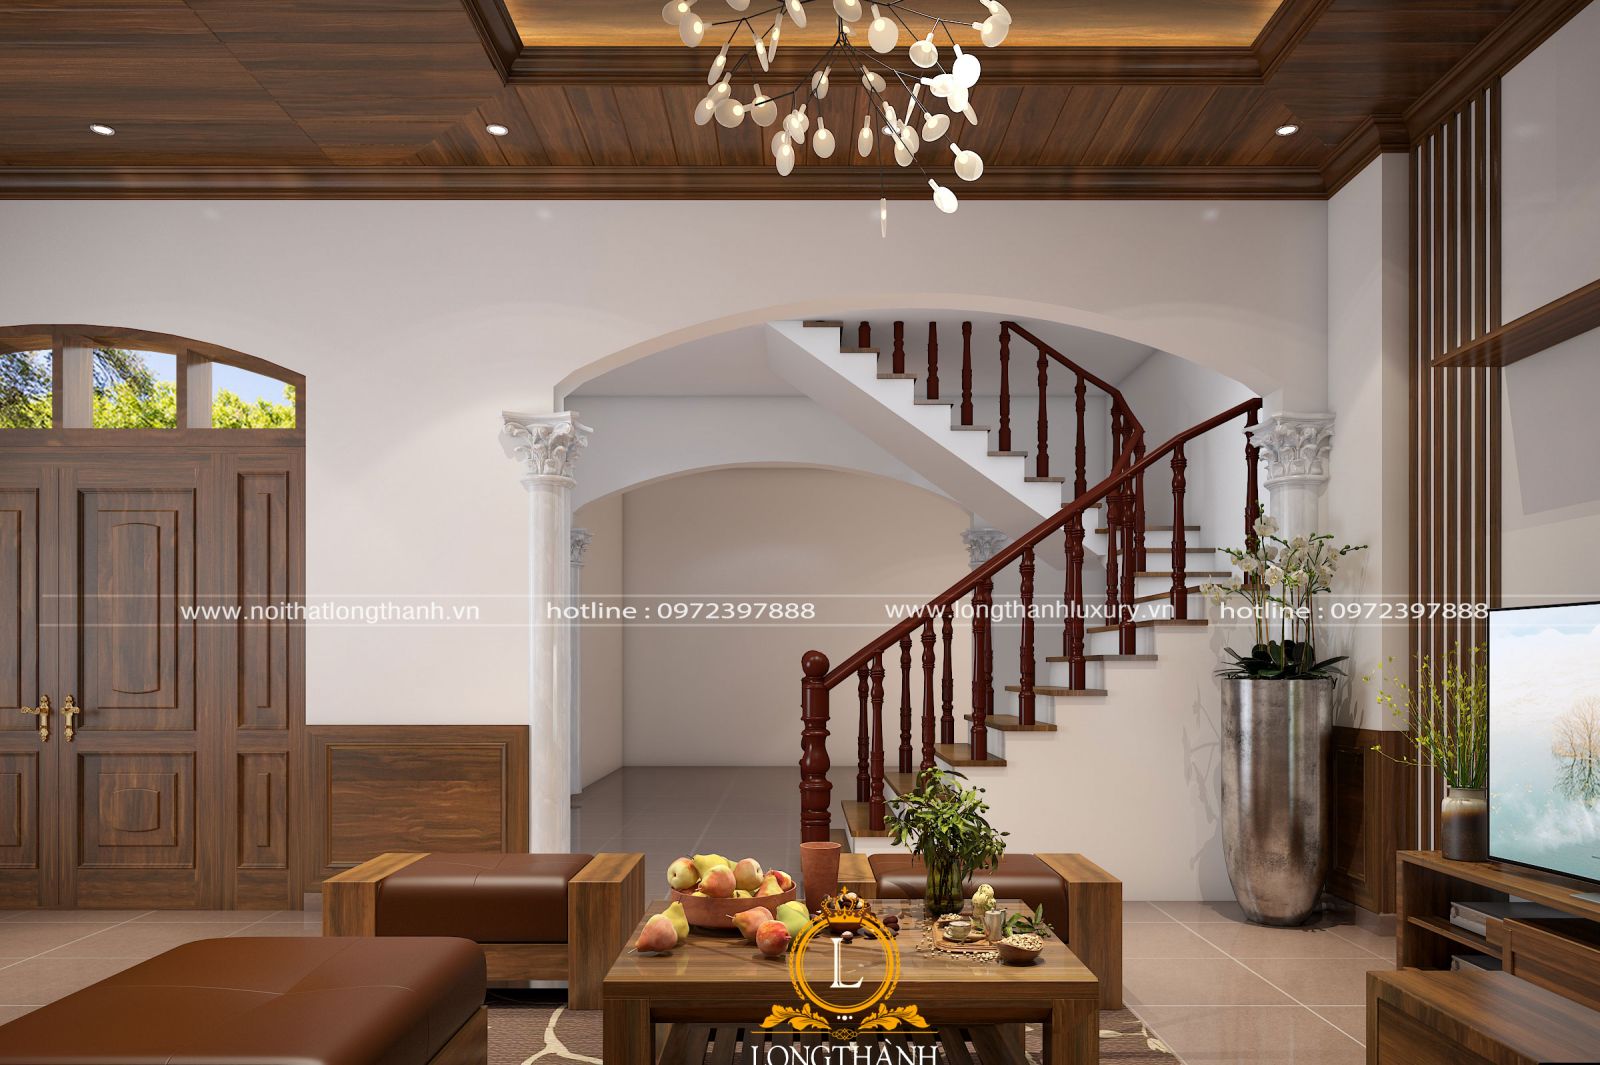 Phòng khách nhà biệt thự được thiết kế theo phong cách hiện đại đơn giản mà tiện nghi